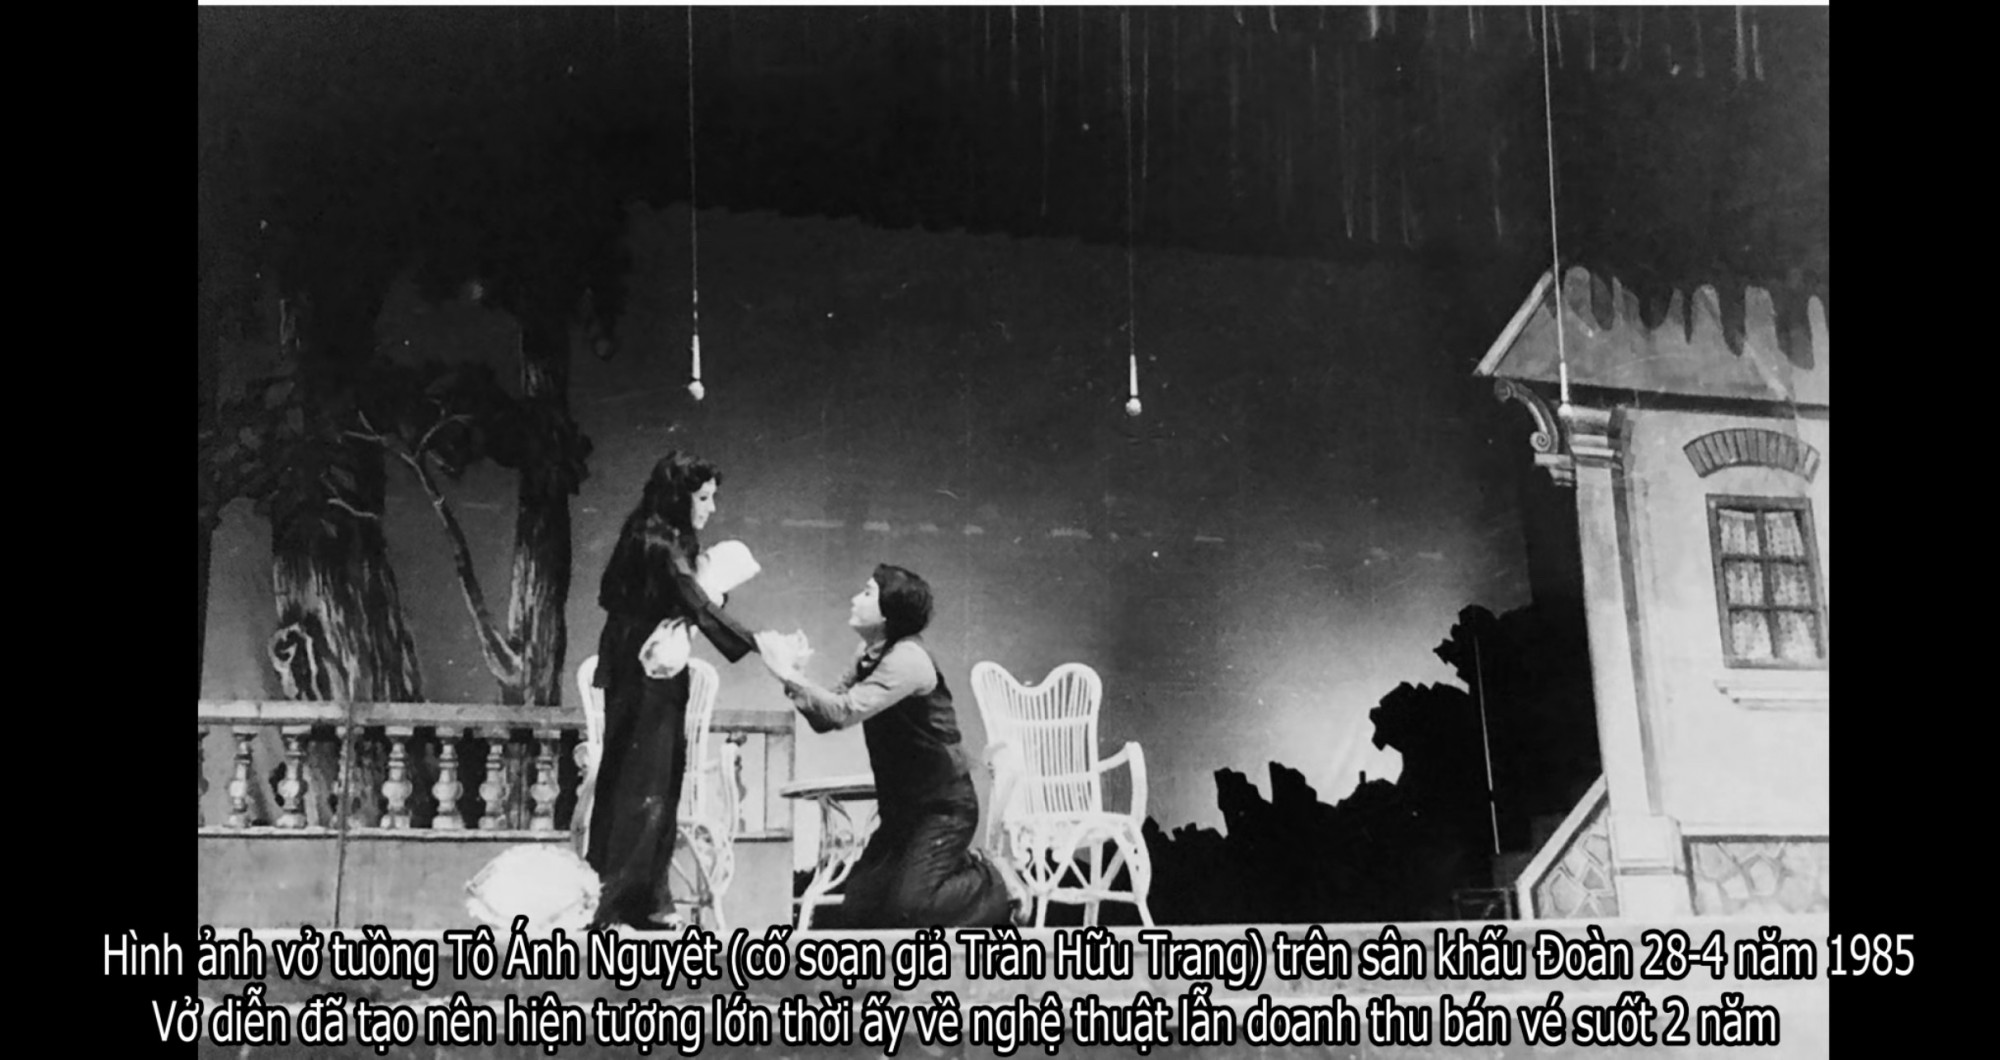 Hình ảnh hiếm hoi trong vở Tô Ánh Nguyệt biểu diễn năm 1985 còn được lưu giữ